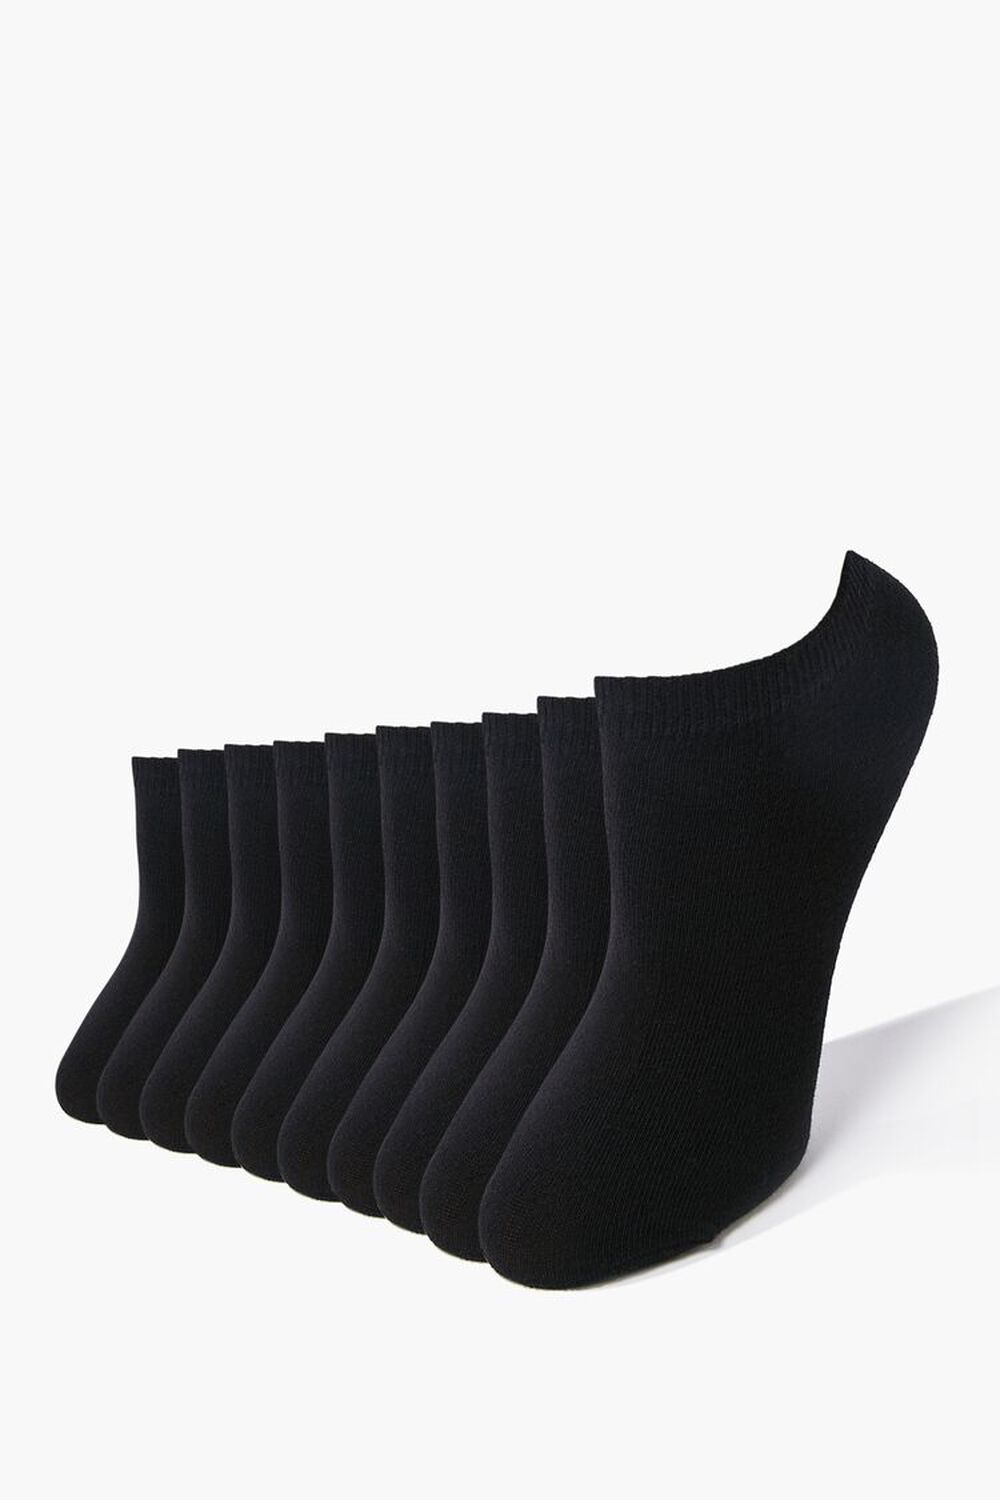 BLACK Knit Ankle Socks - 5 Pack, image 1